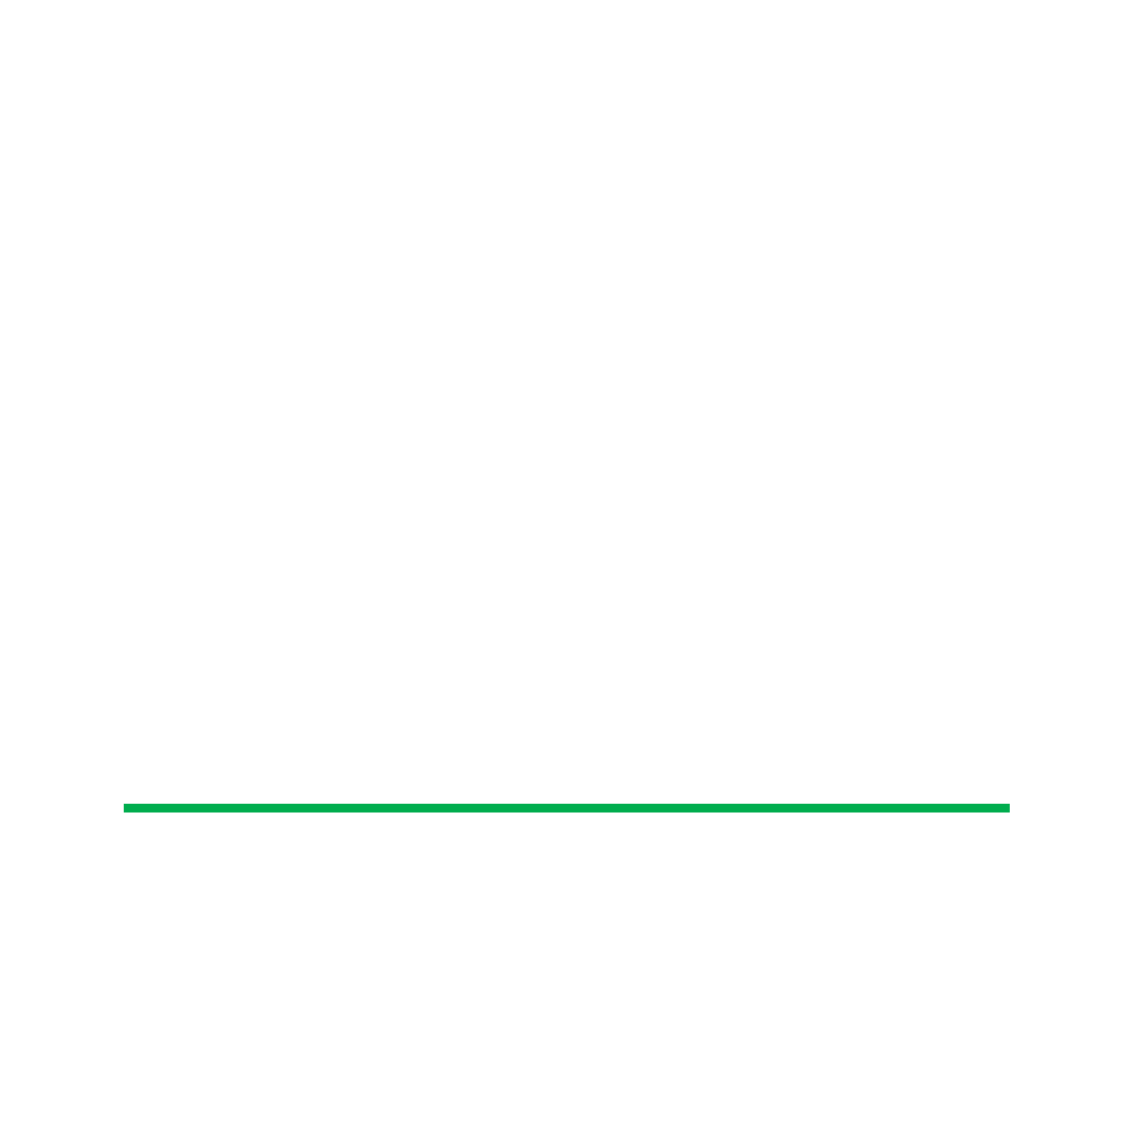 BENEKIVA-INSURETECHCONNECT stacked white-01